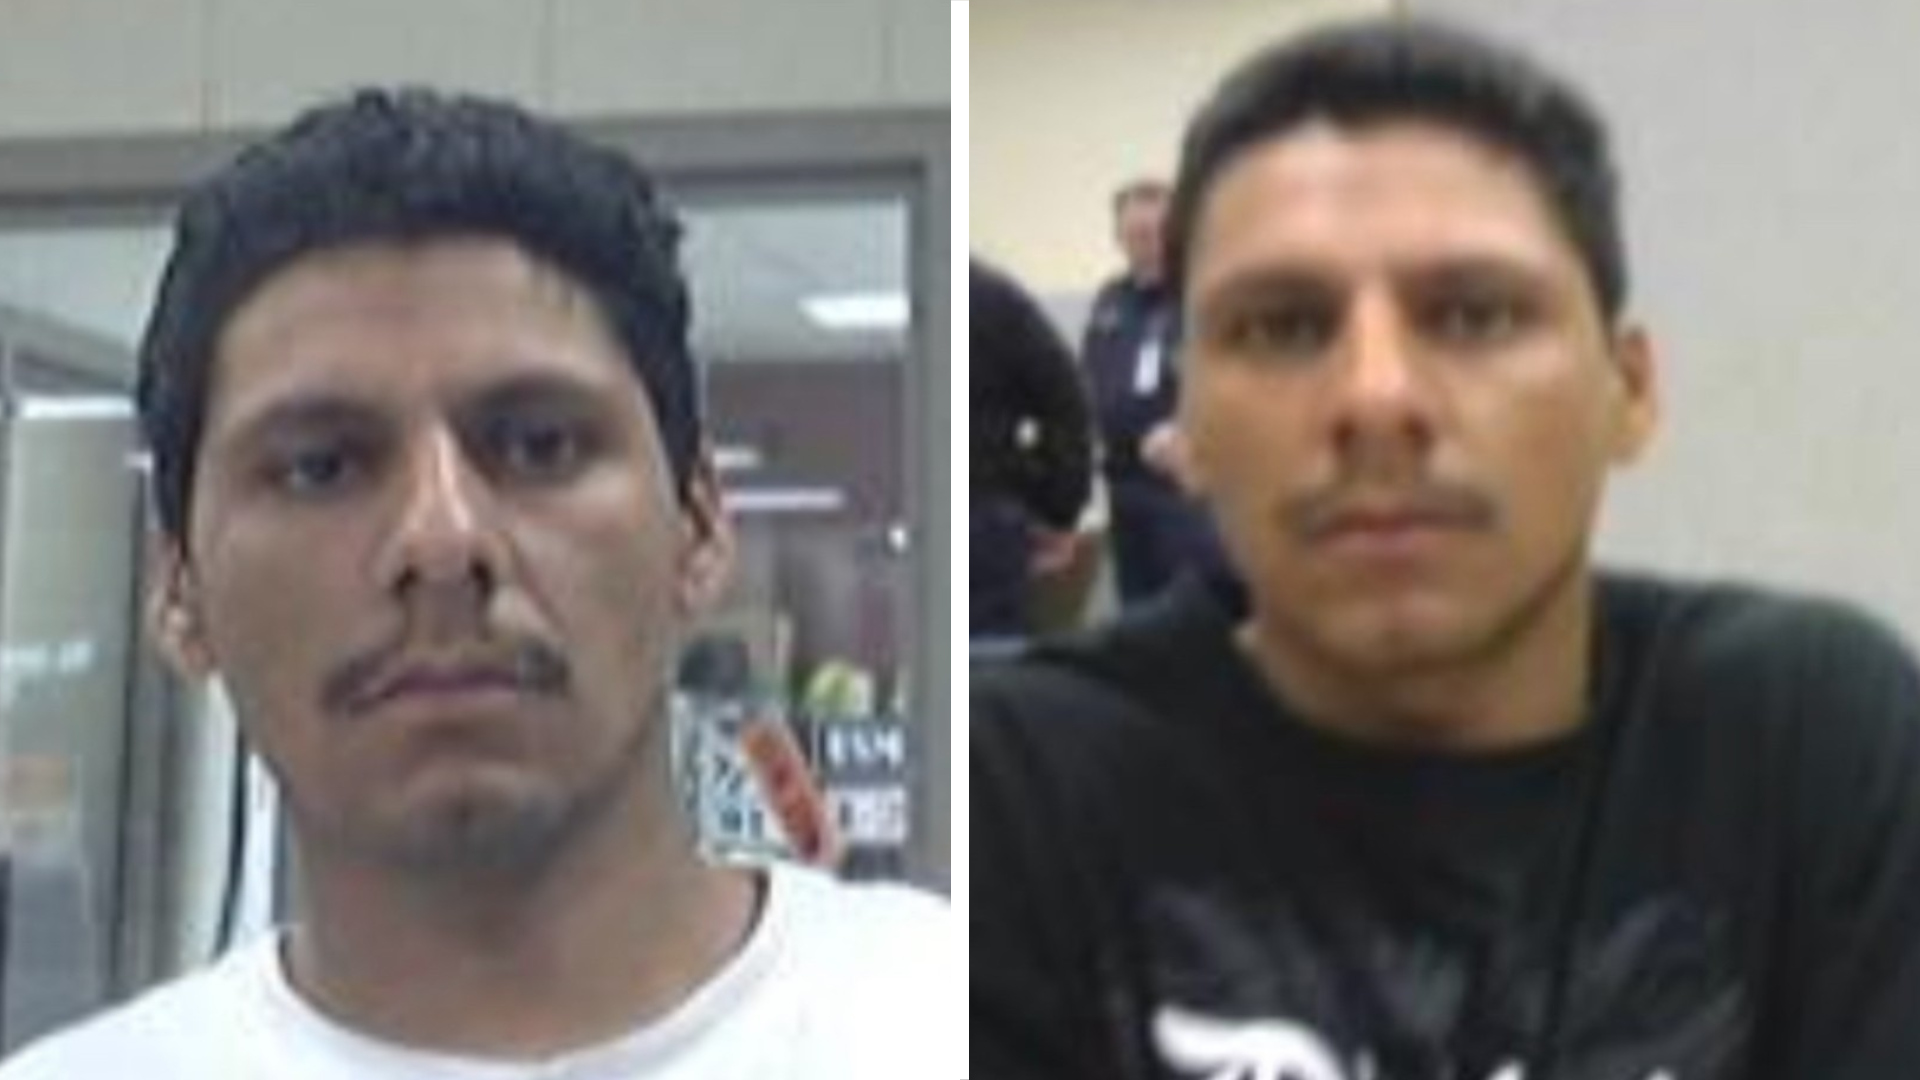 Francisco Oropesa tenía 38 años al momento de perpetrar el ataque, según datos del FBI. (FBI)